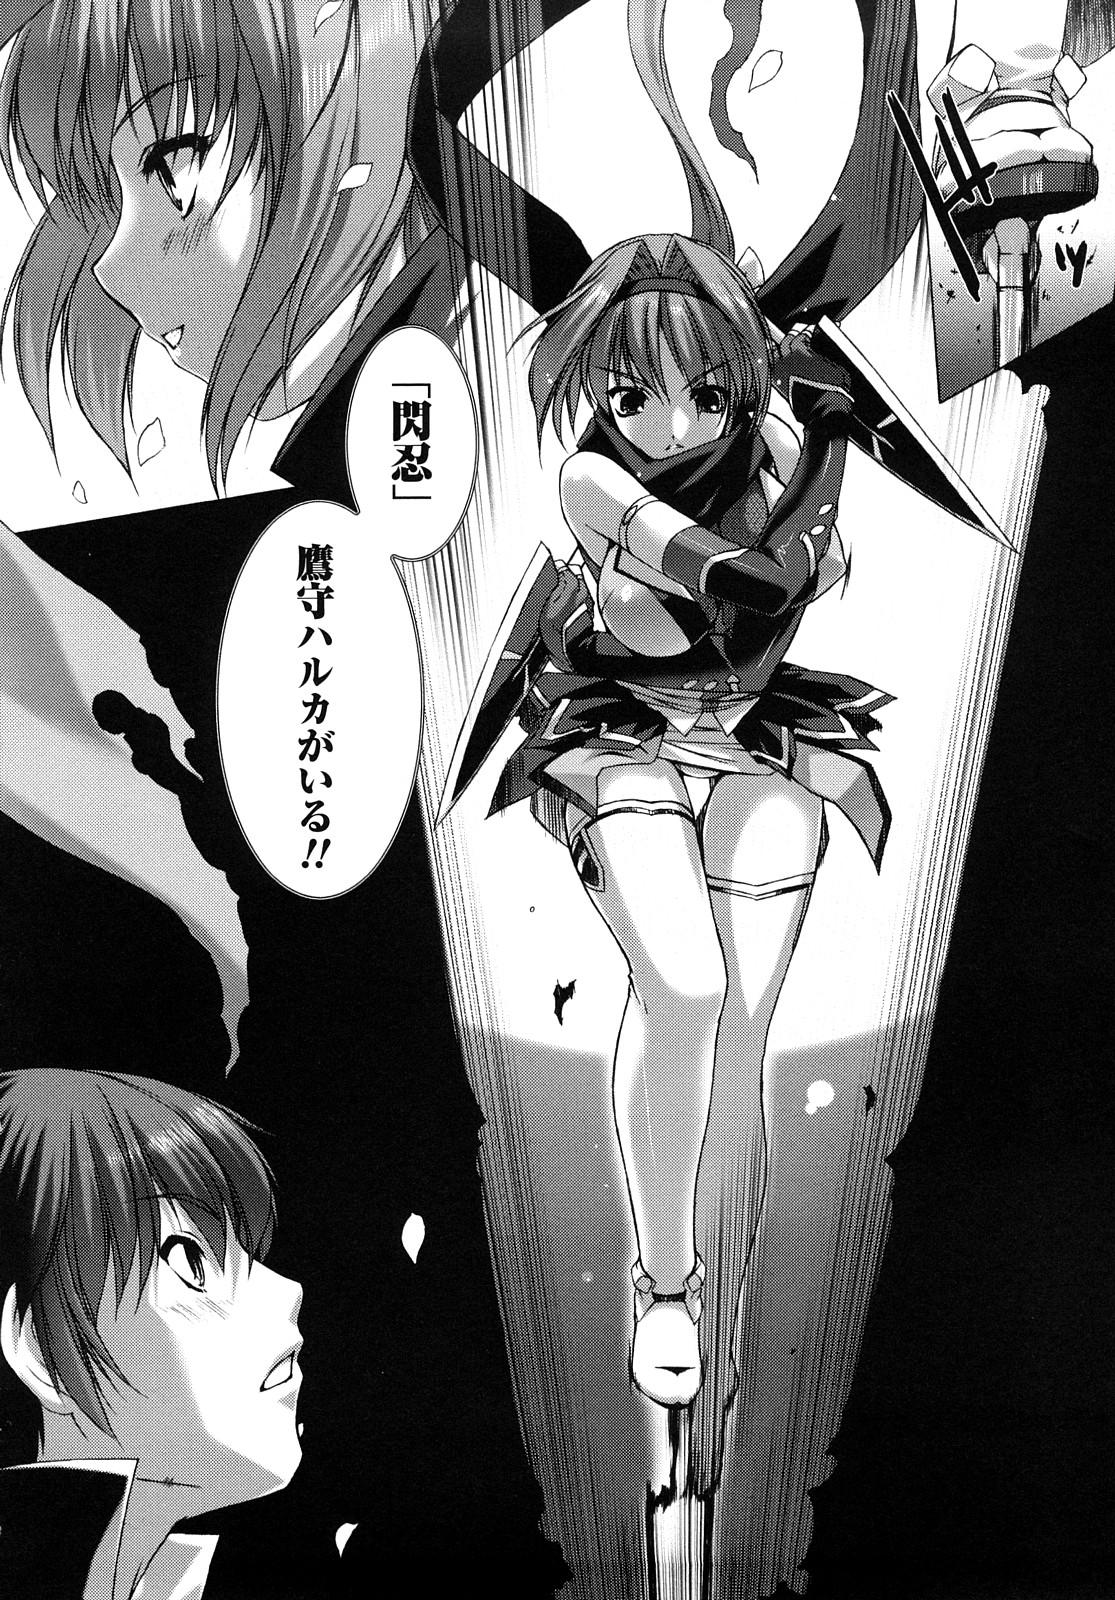 Classroom Choukousennin Haruka: Yaiba no Maki - Beat blades haruka Masturbation - Page 7